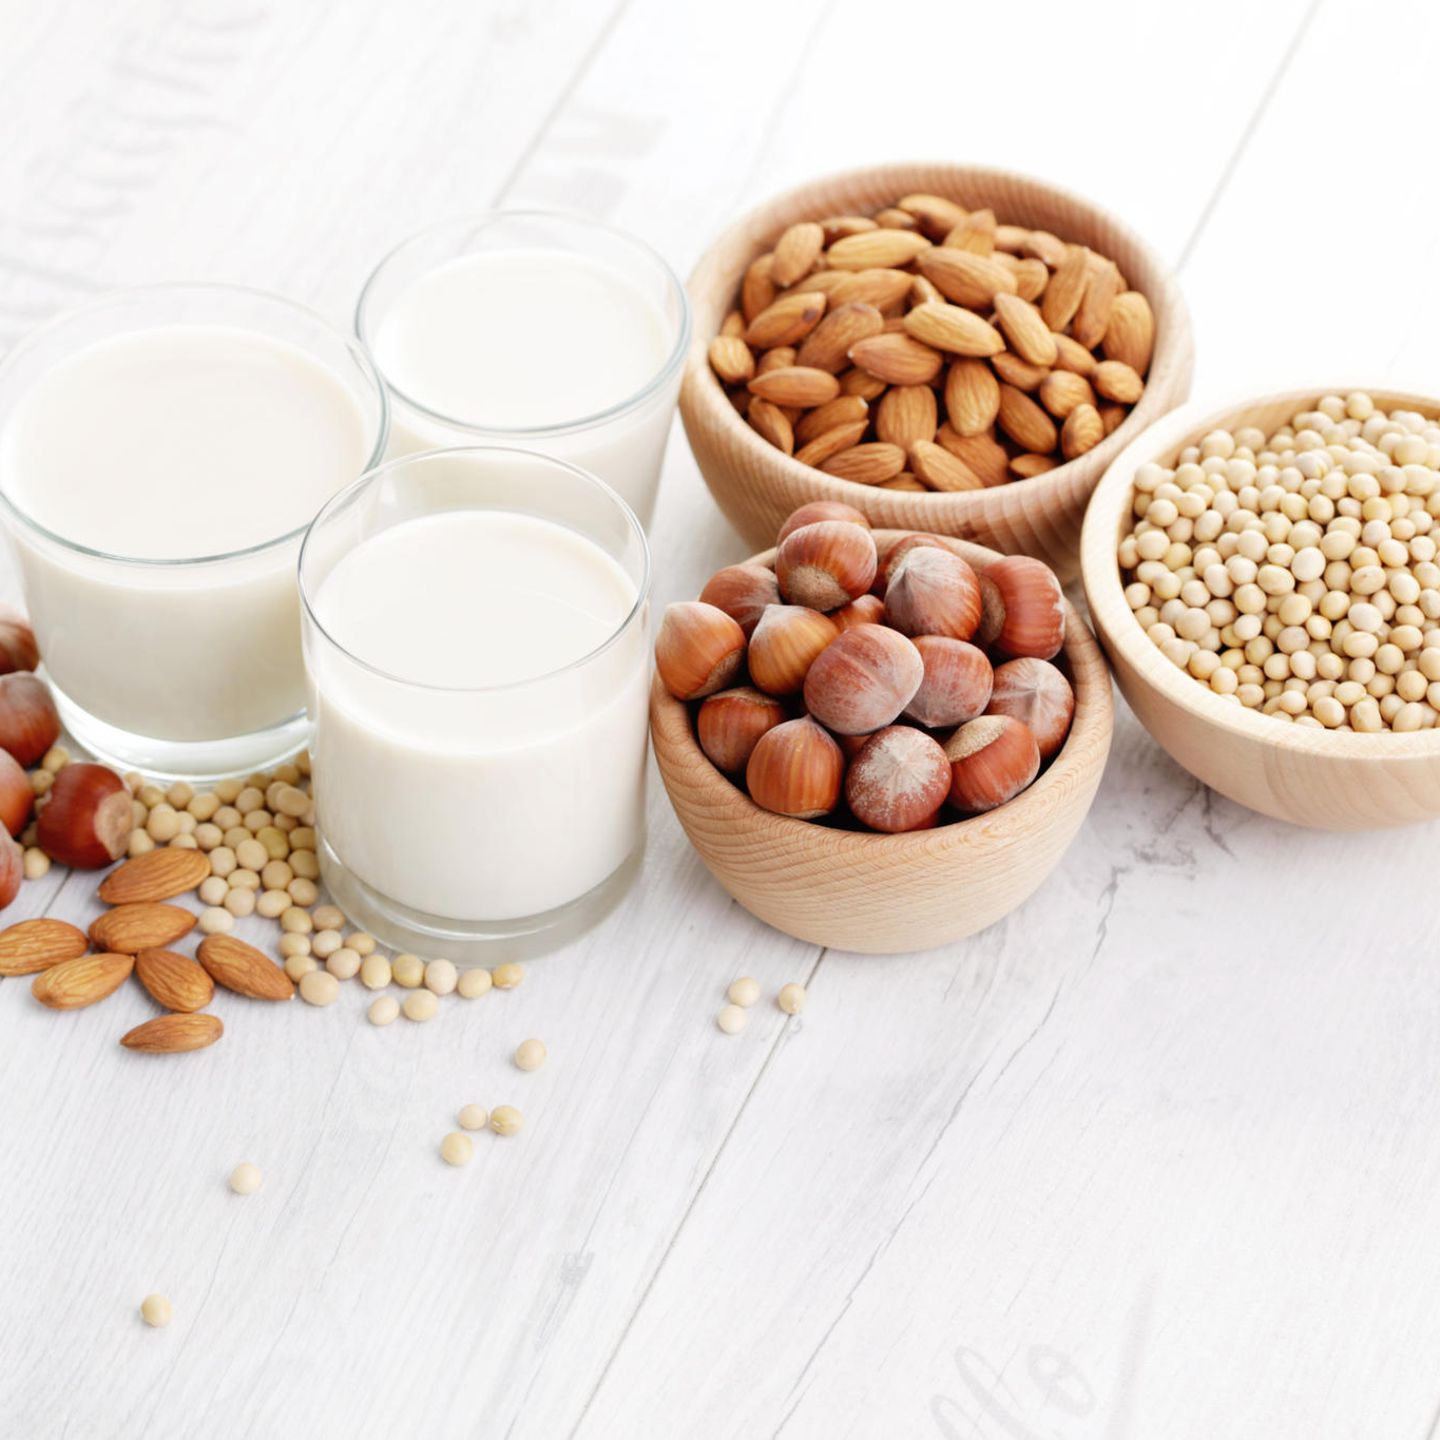 Milchersatz: Die 7 besten Alternativen für Kuhmilch